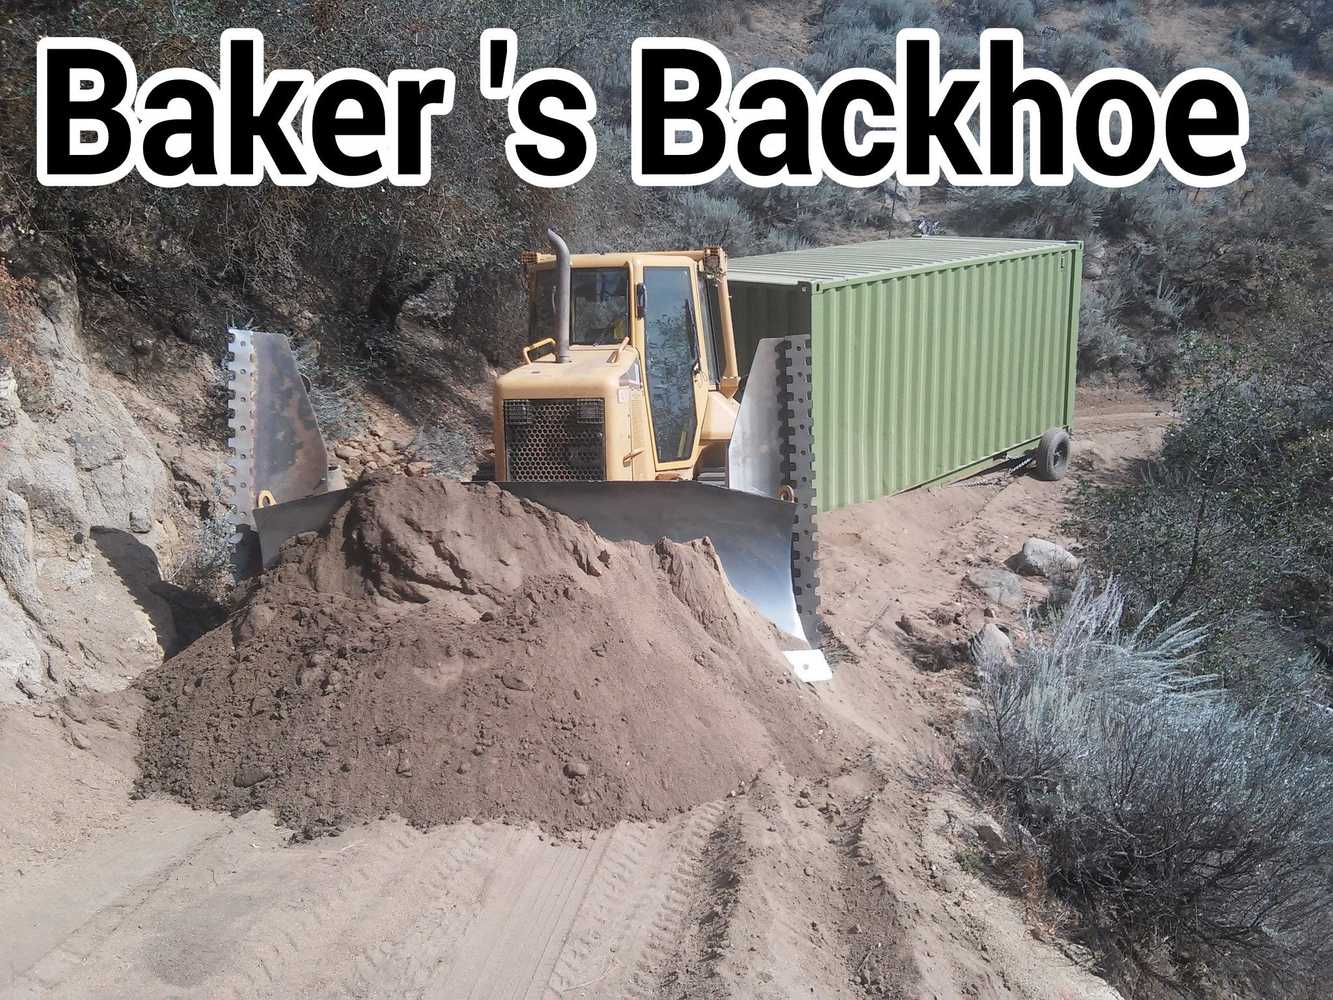 Baker's Backhoe